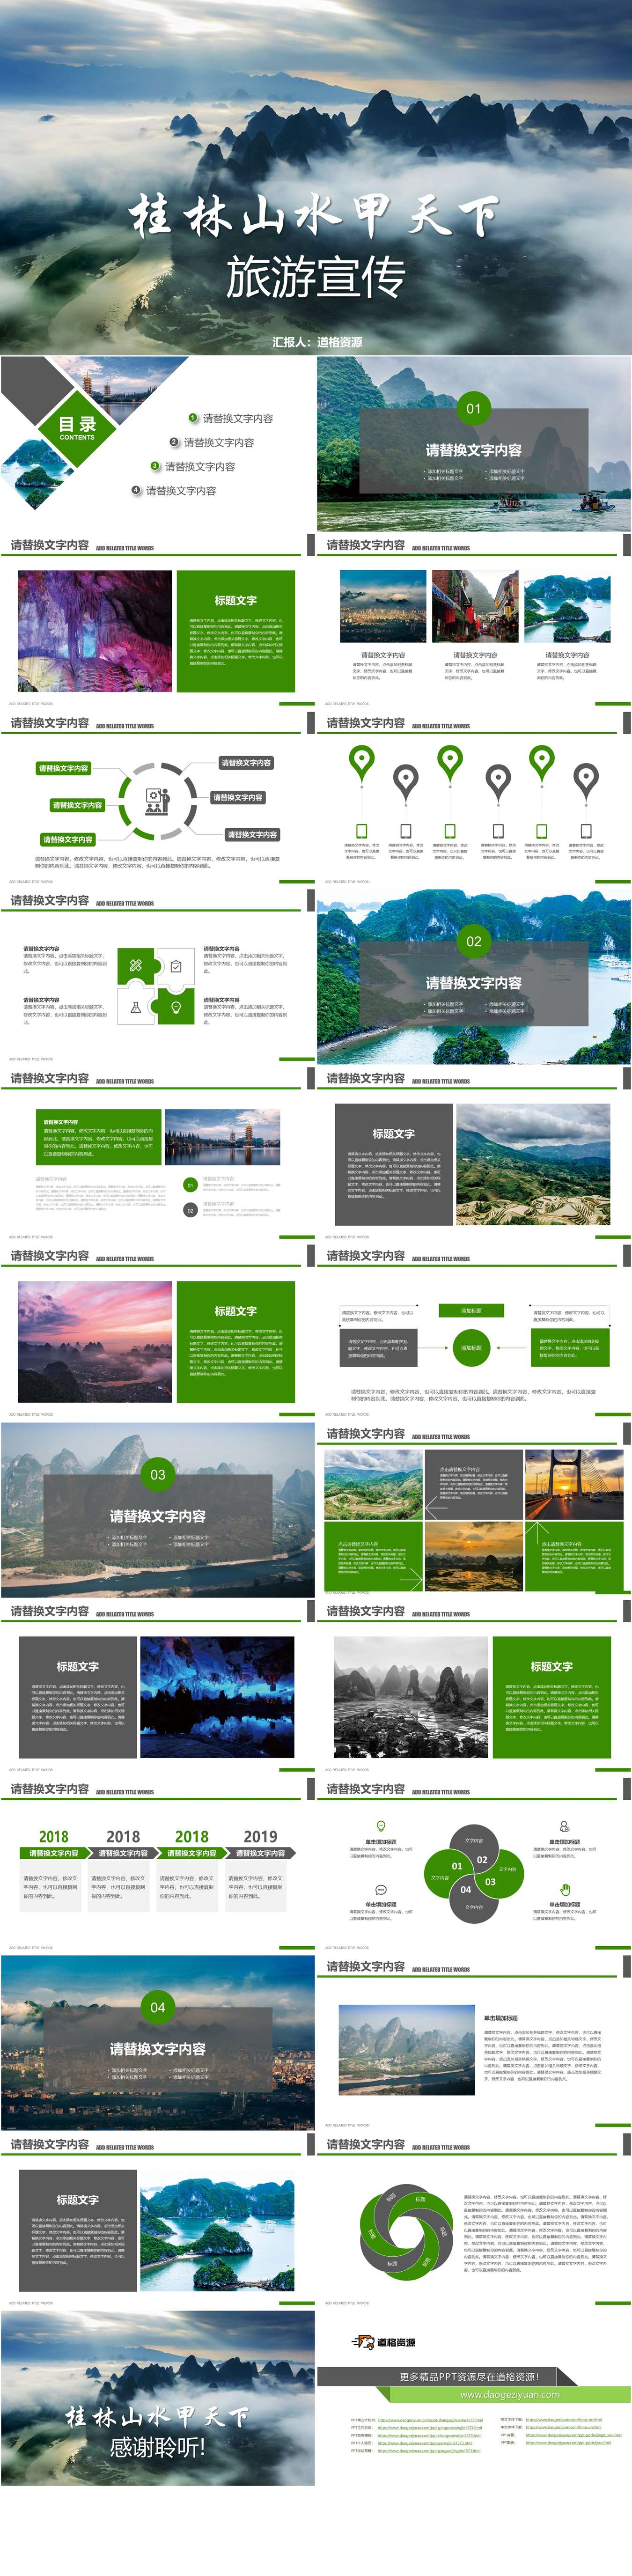 桂林山水甲天下旅游宣传旅游画册PPT模板（2）